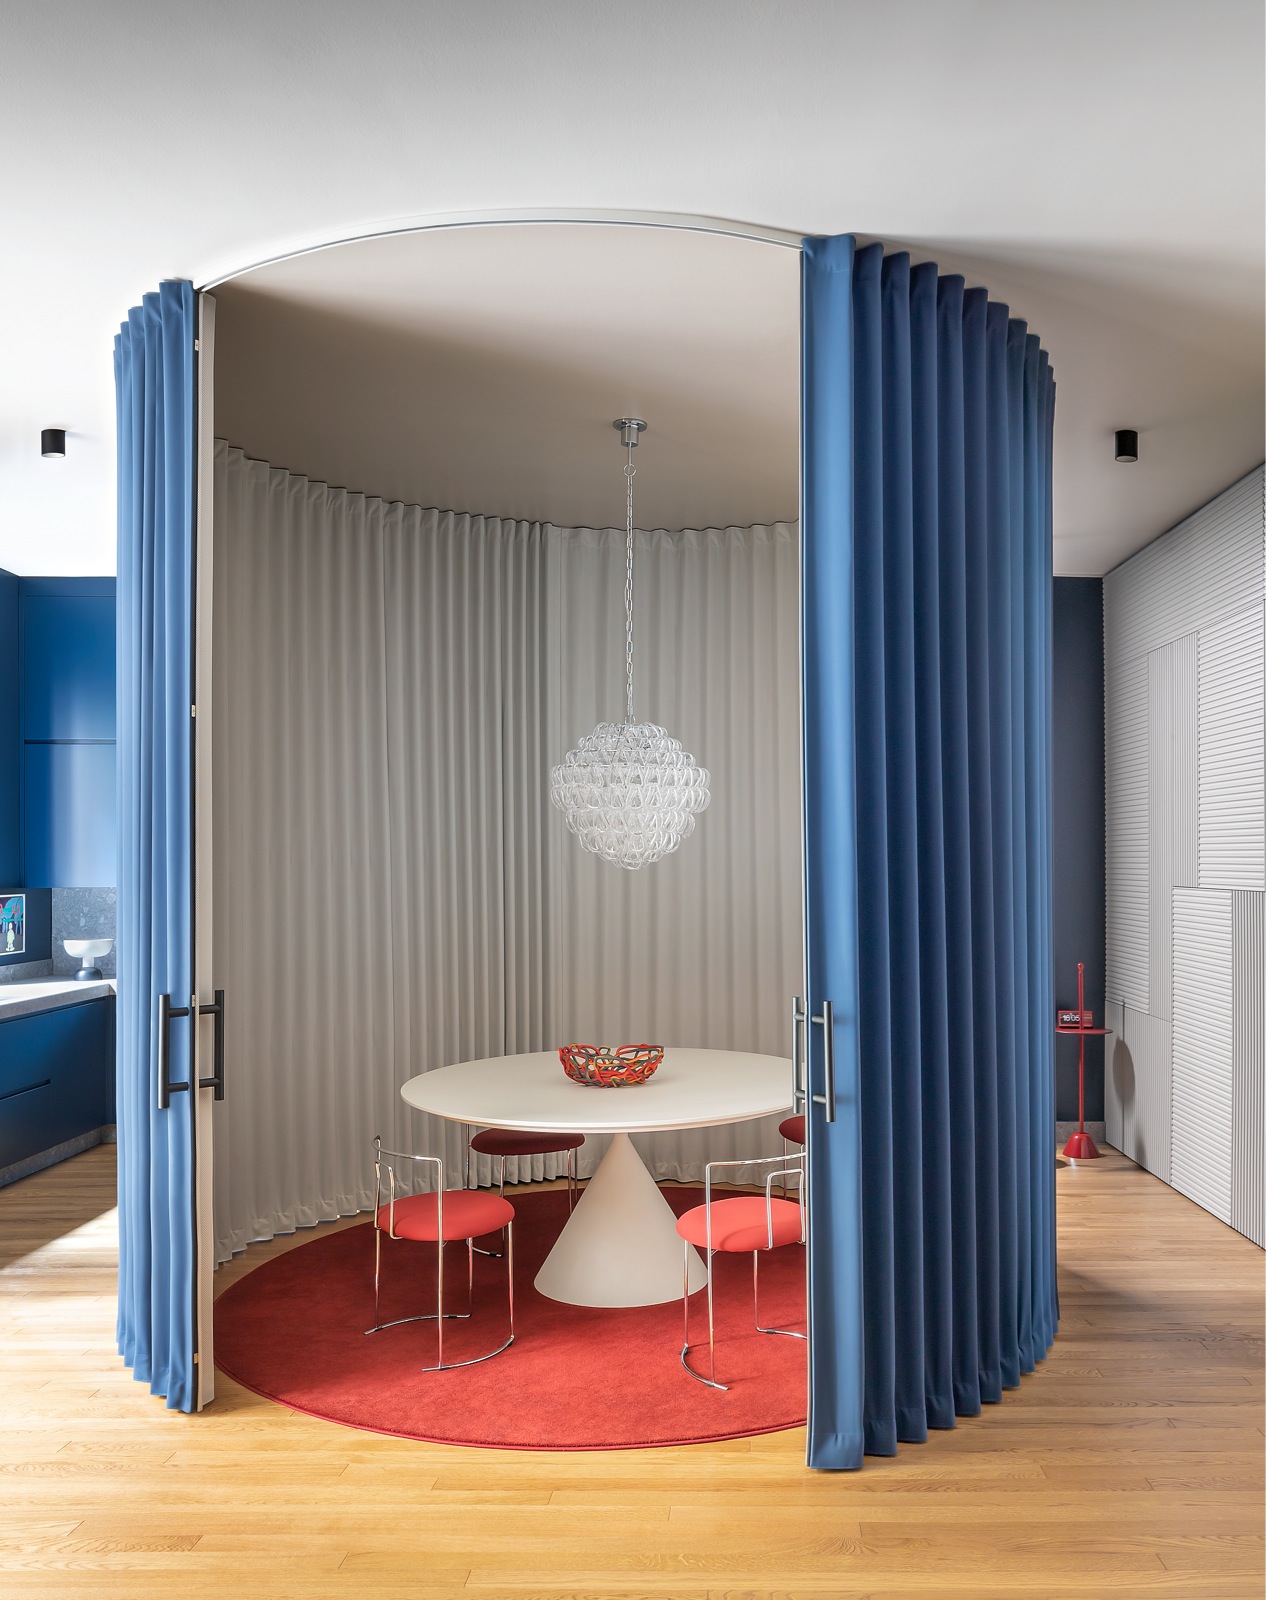 Căn hộ tại Milan (Ý) do Calvi Brambilla Studio thiết kế. Phòng ăn được 'bao bọc' bởi hệ khung hình trụ có rèm kéo của thương hiệu Dooor. Lớp bên trong màu trắng, lớp bên ngoài màu xanh lam 'tone sur tone' với hệ tủ bếp.